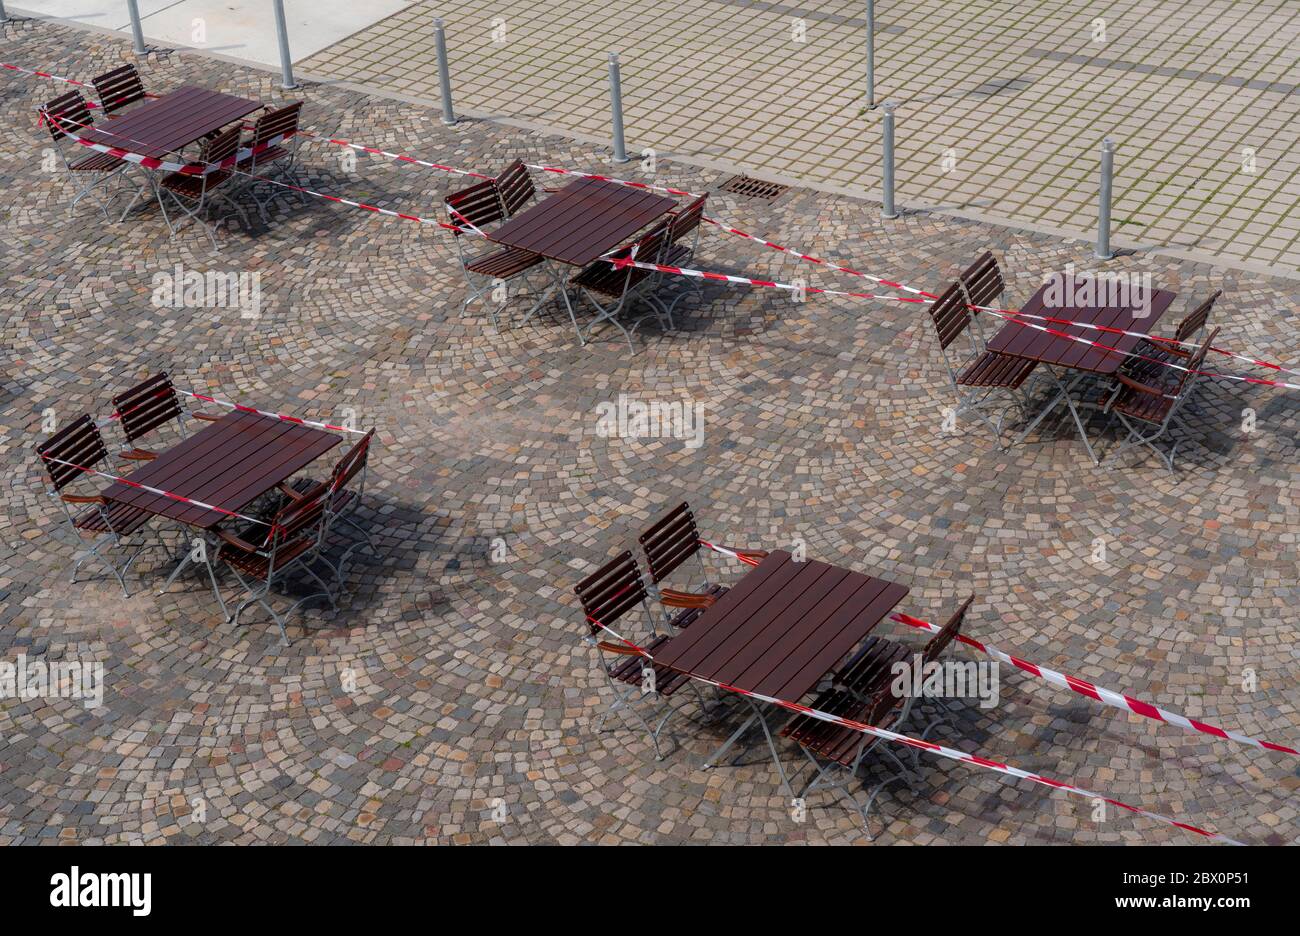 Gastronomie während der Corona-Krise, verschlossene Tische im Biergarten, Essen, Ruhrgebiet, NRW, Deutschland Stockfoto